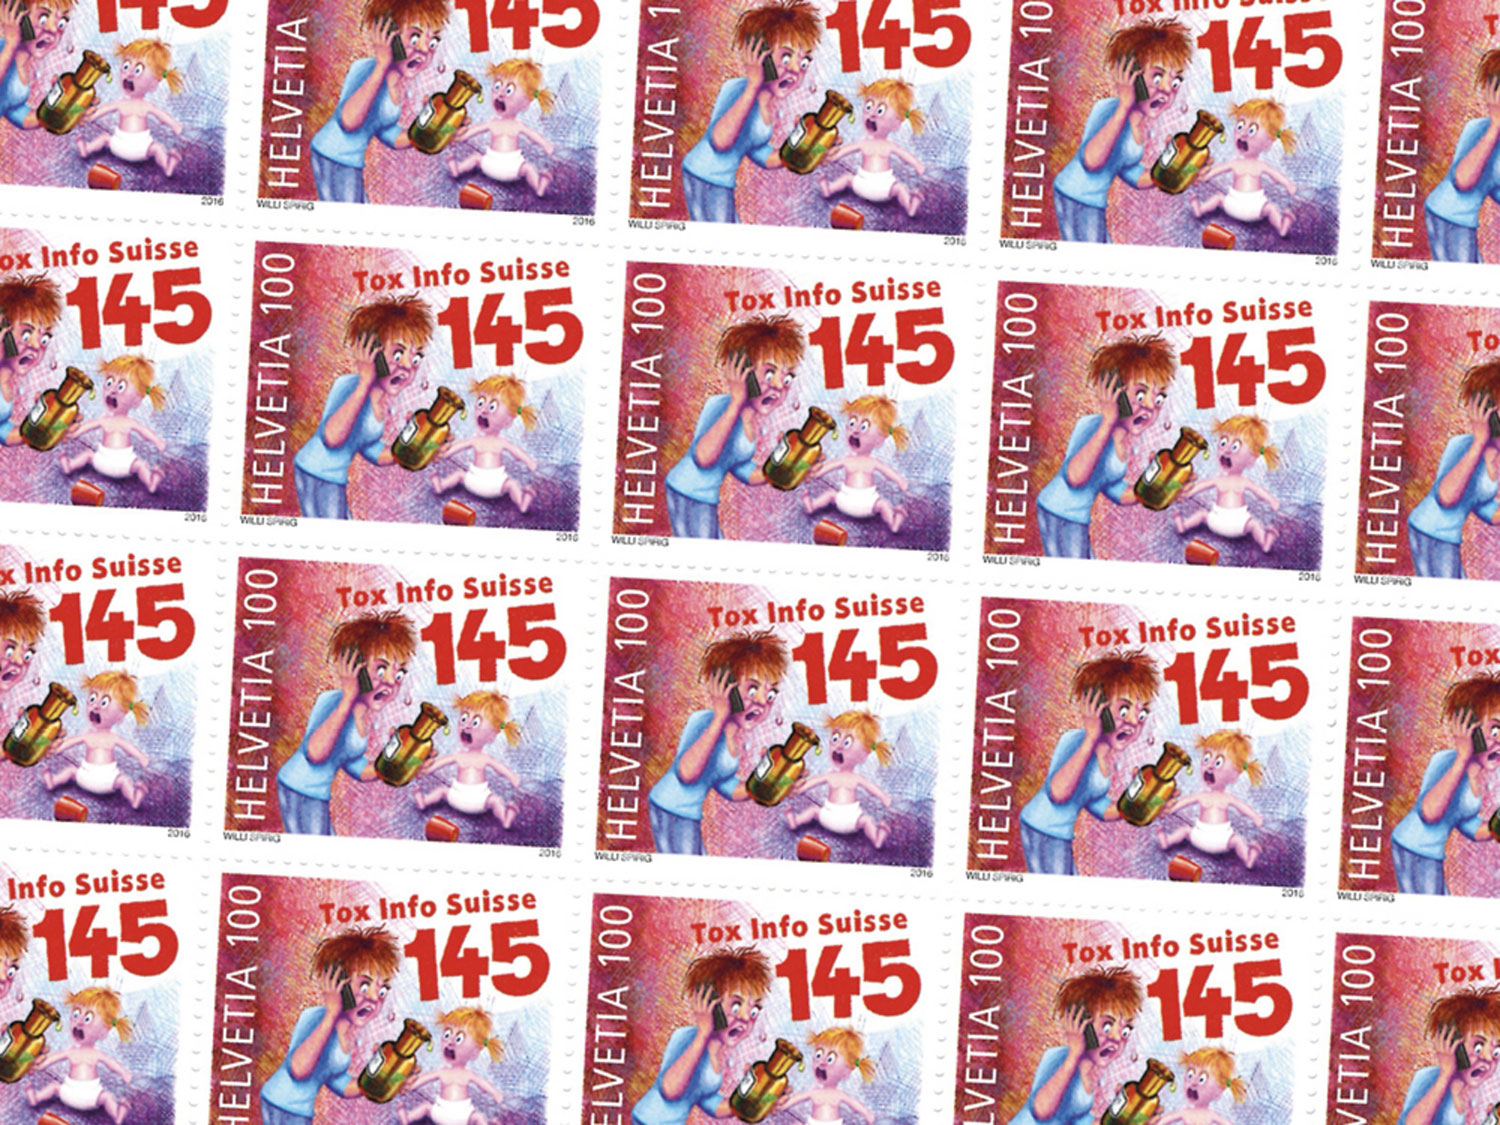 Briefmarke zur Bewerbung der Notfallnummer 145